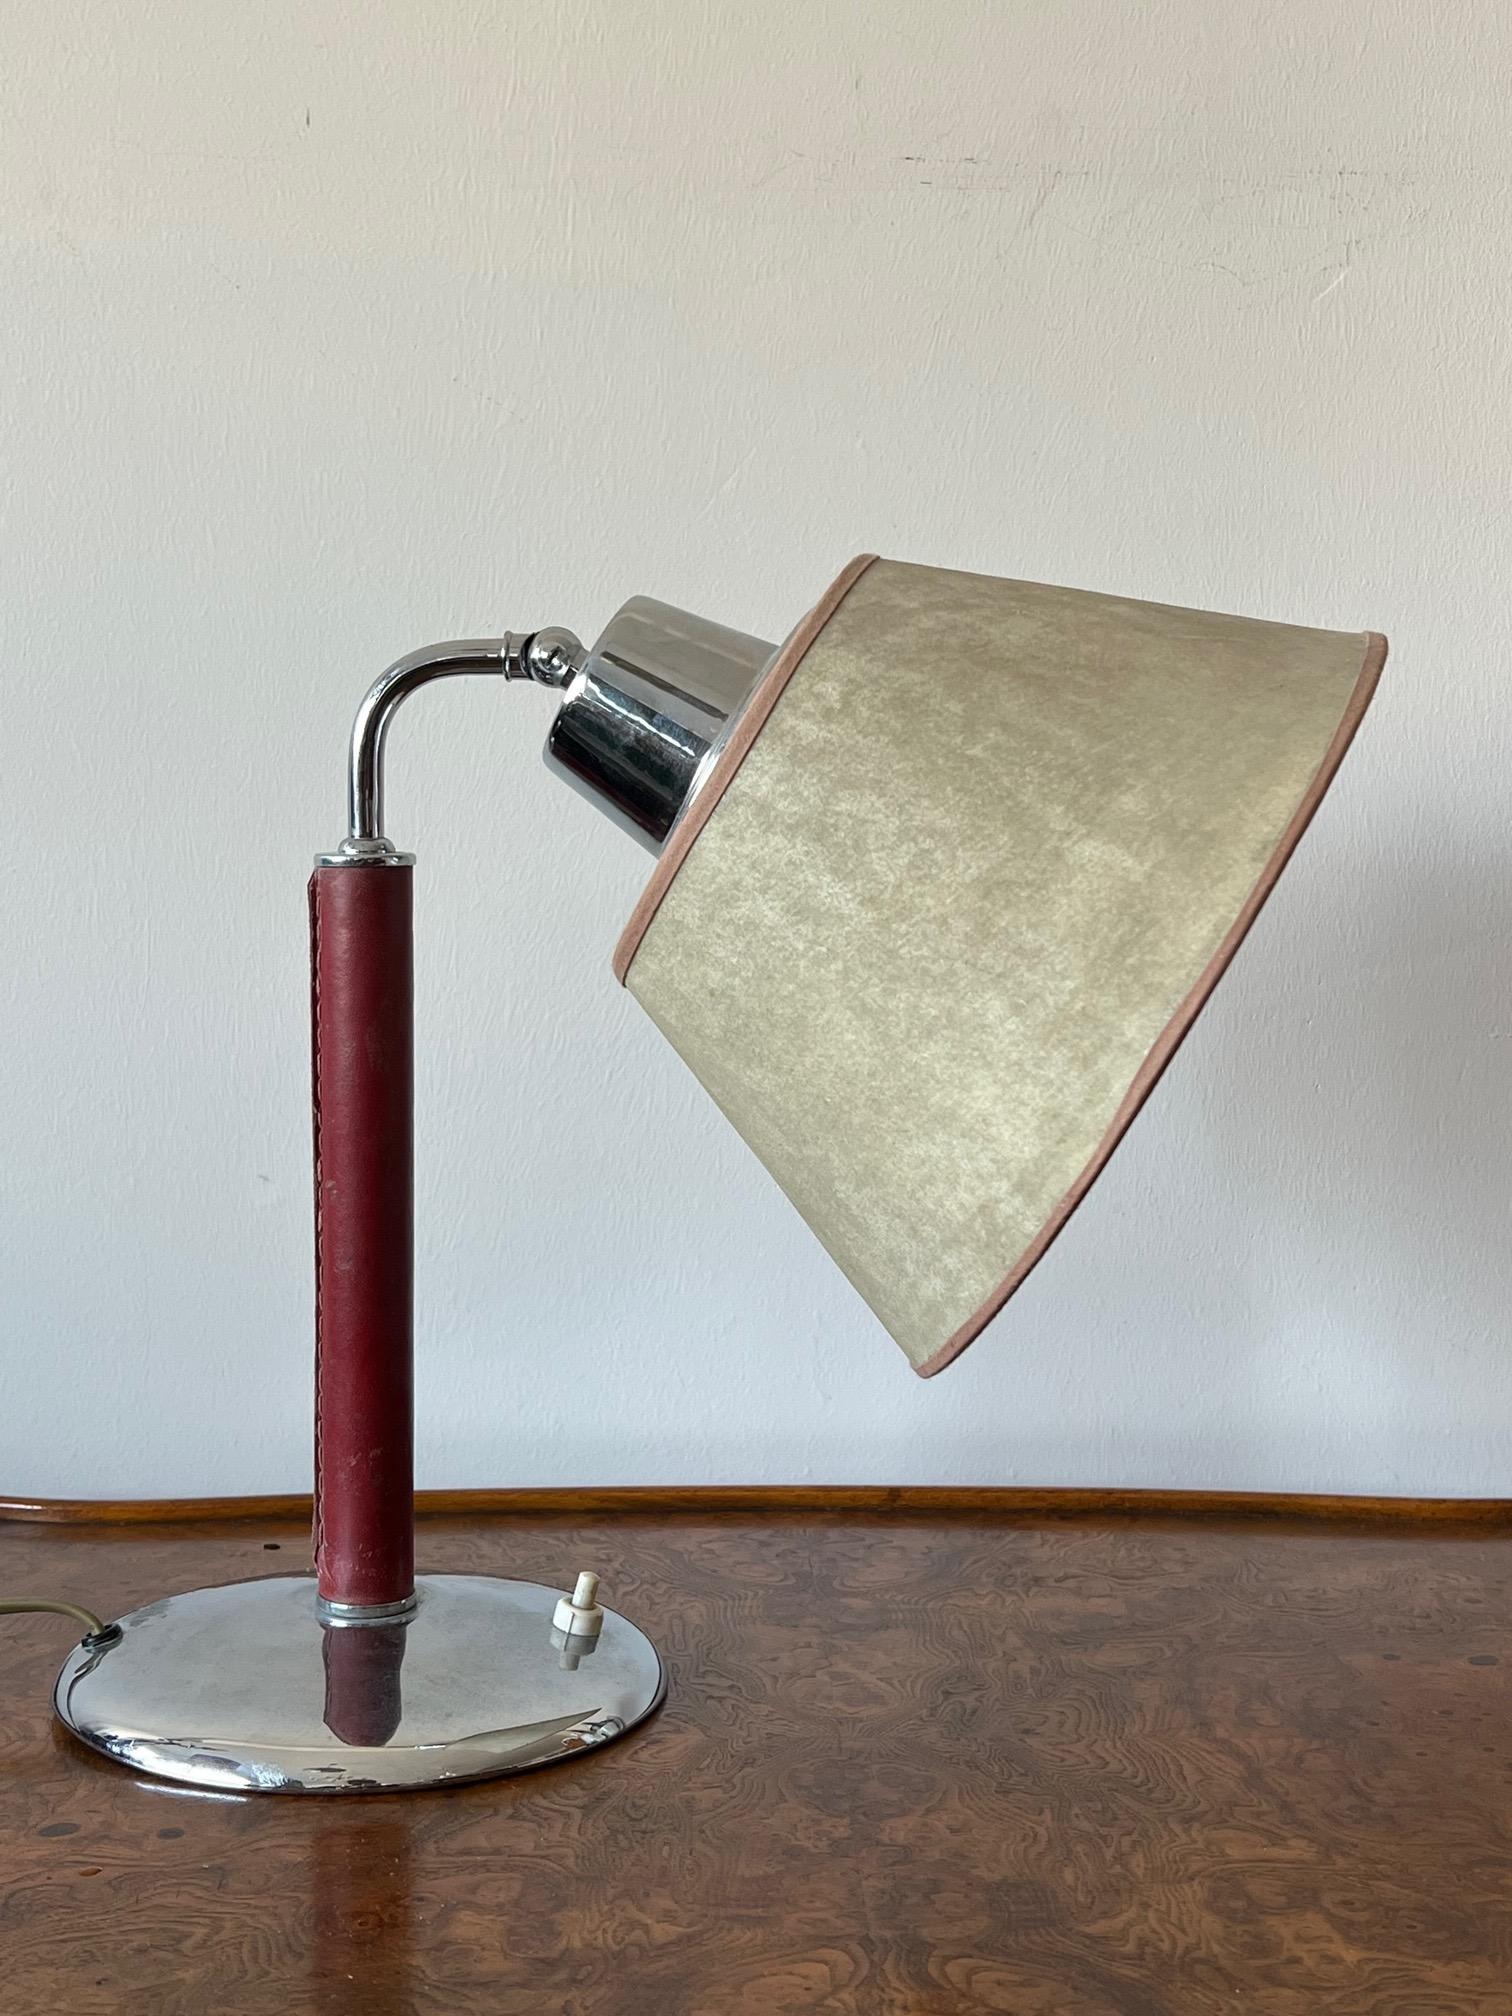 Lampe de table/bureau inhabituelle avec tige recouverte de cuir rouge, abat-jour original en parchemin, laiton chromé.
Une autre caractéristique est que l'abat-jour peut être relevé pour devenir un éclairage vers le haut.